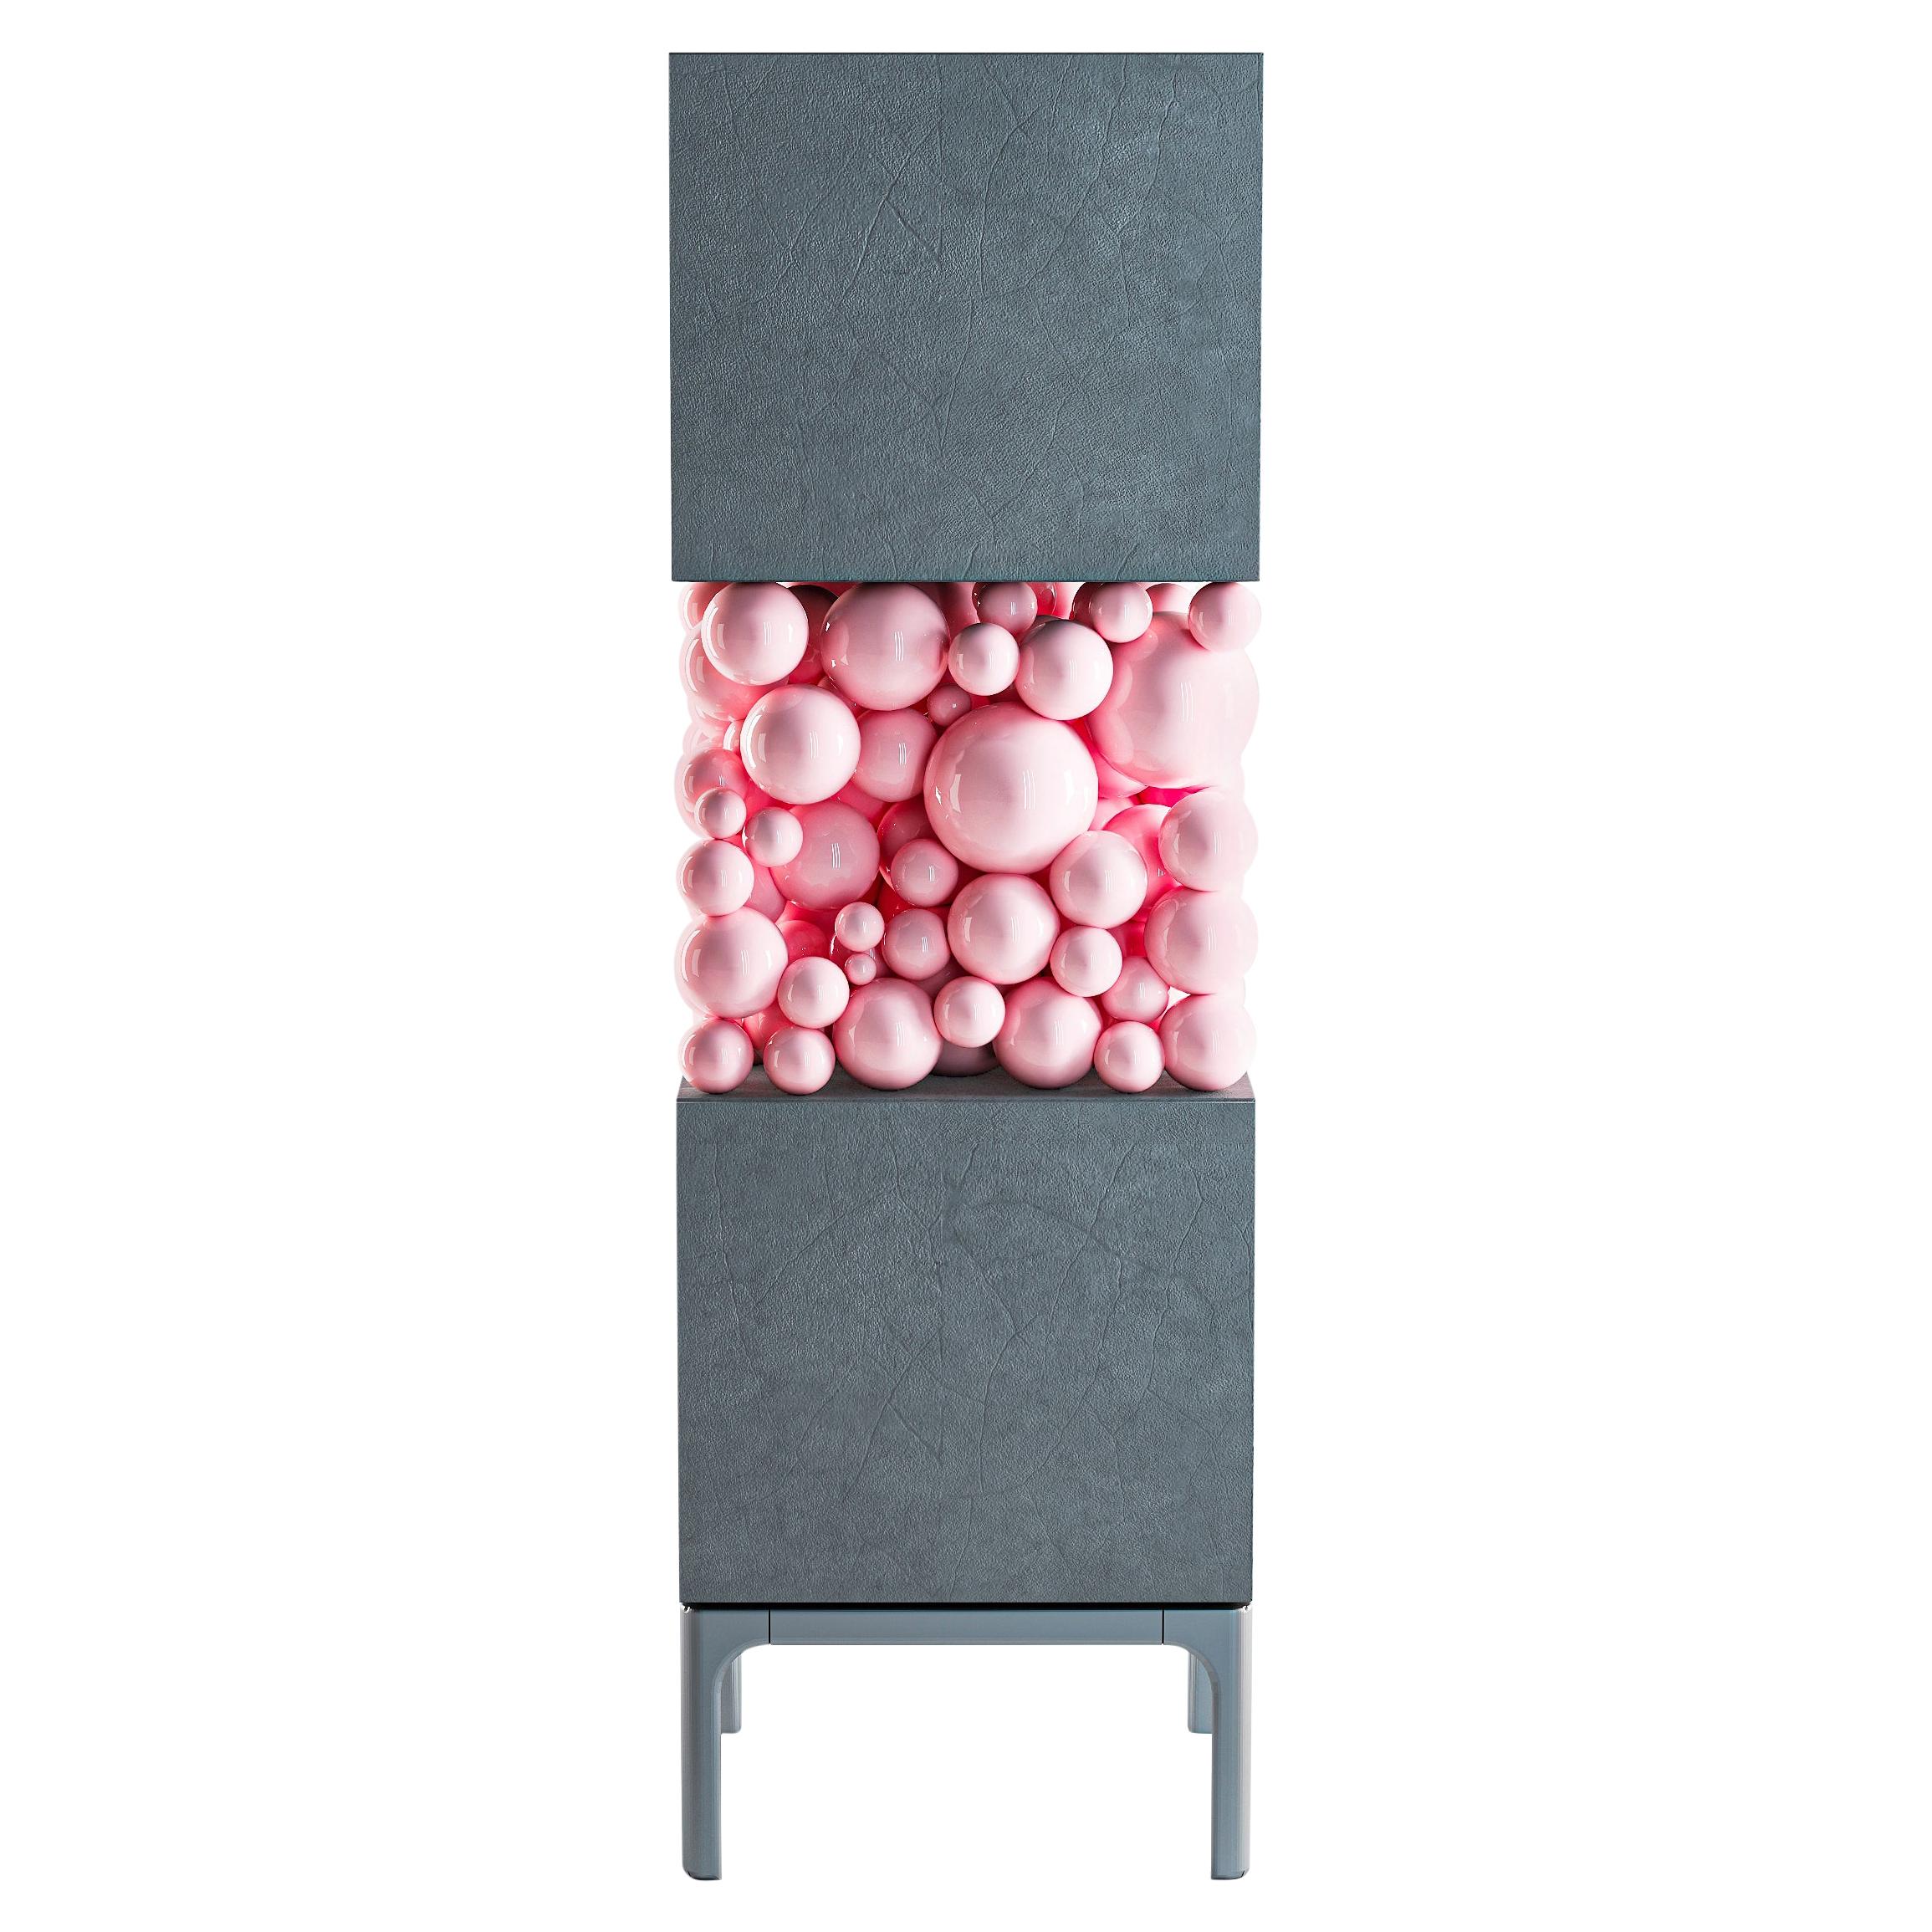 Holzschrank in Grau, Bubbles Kollektion, erstaunliches emotionales Design